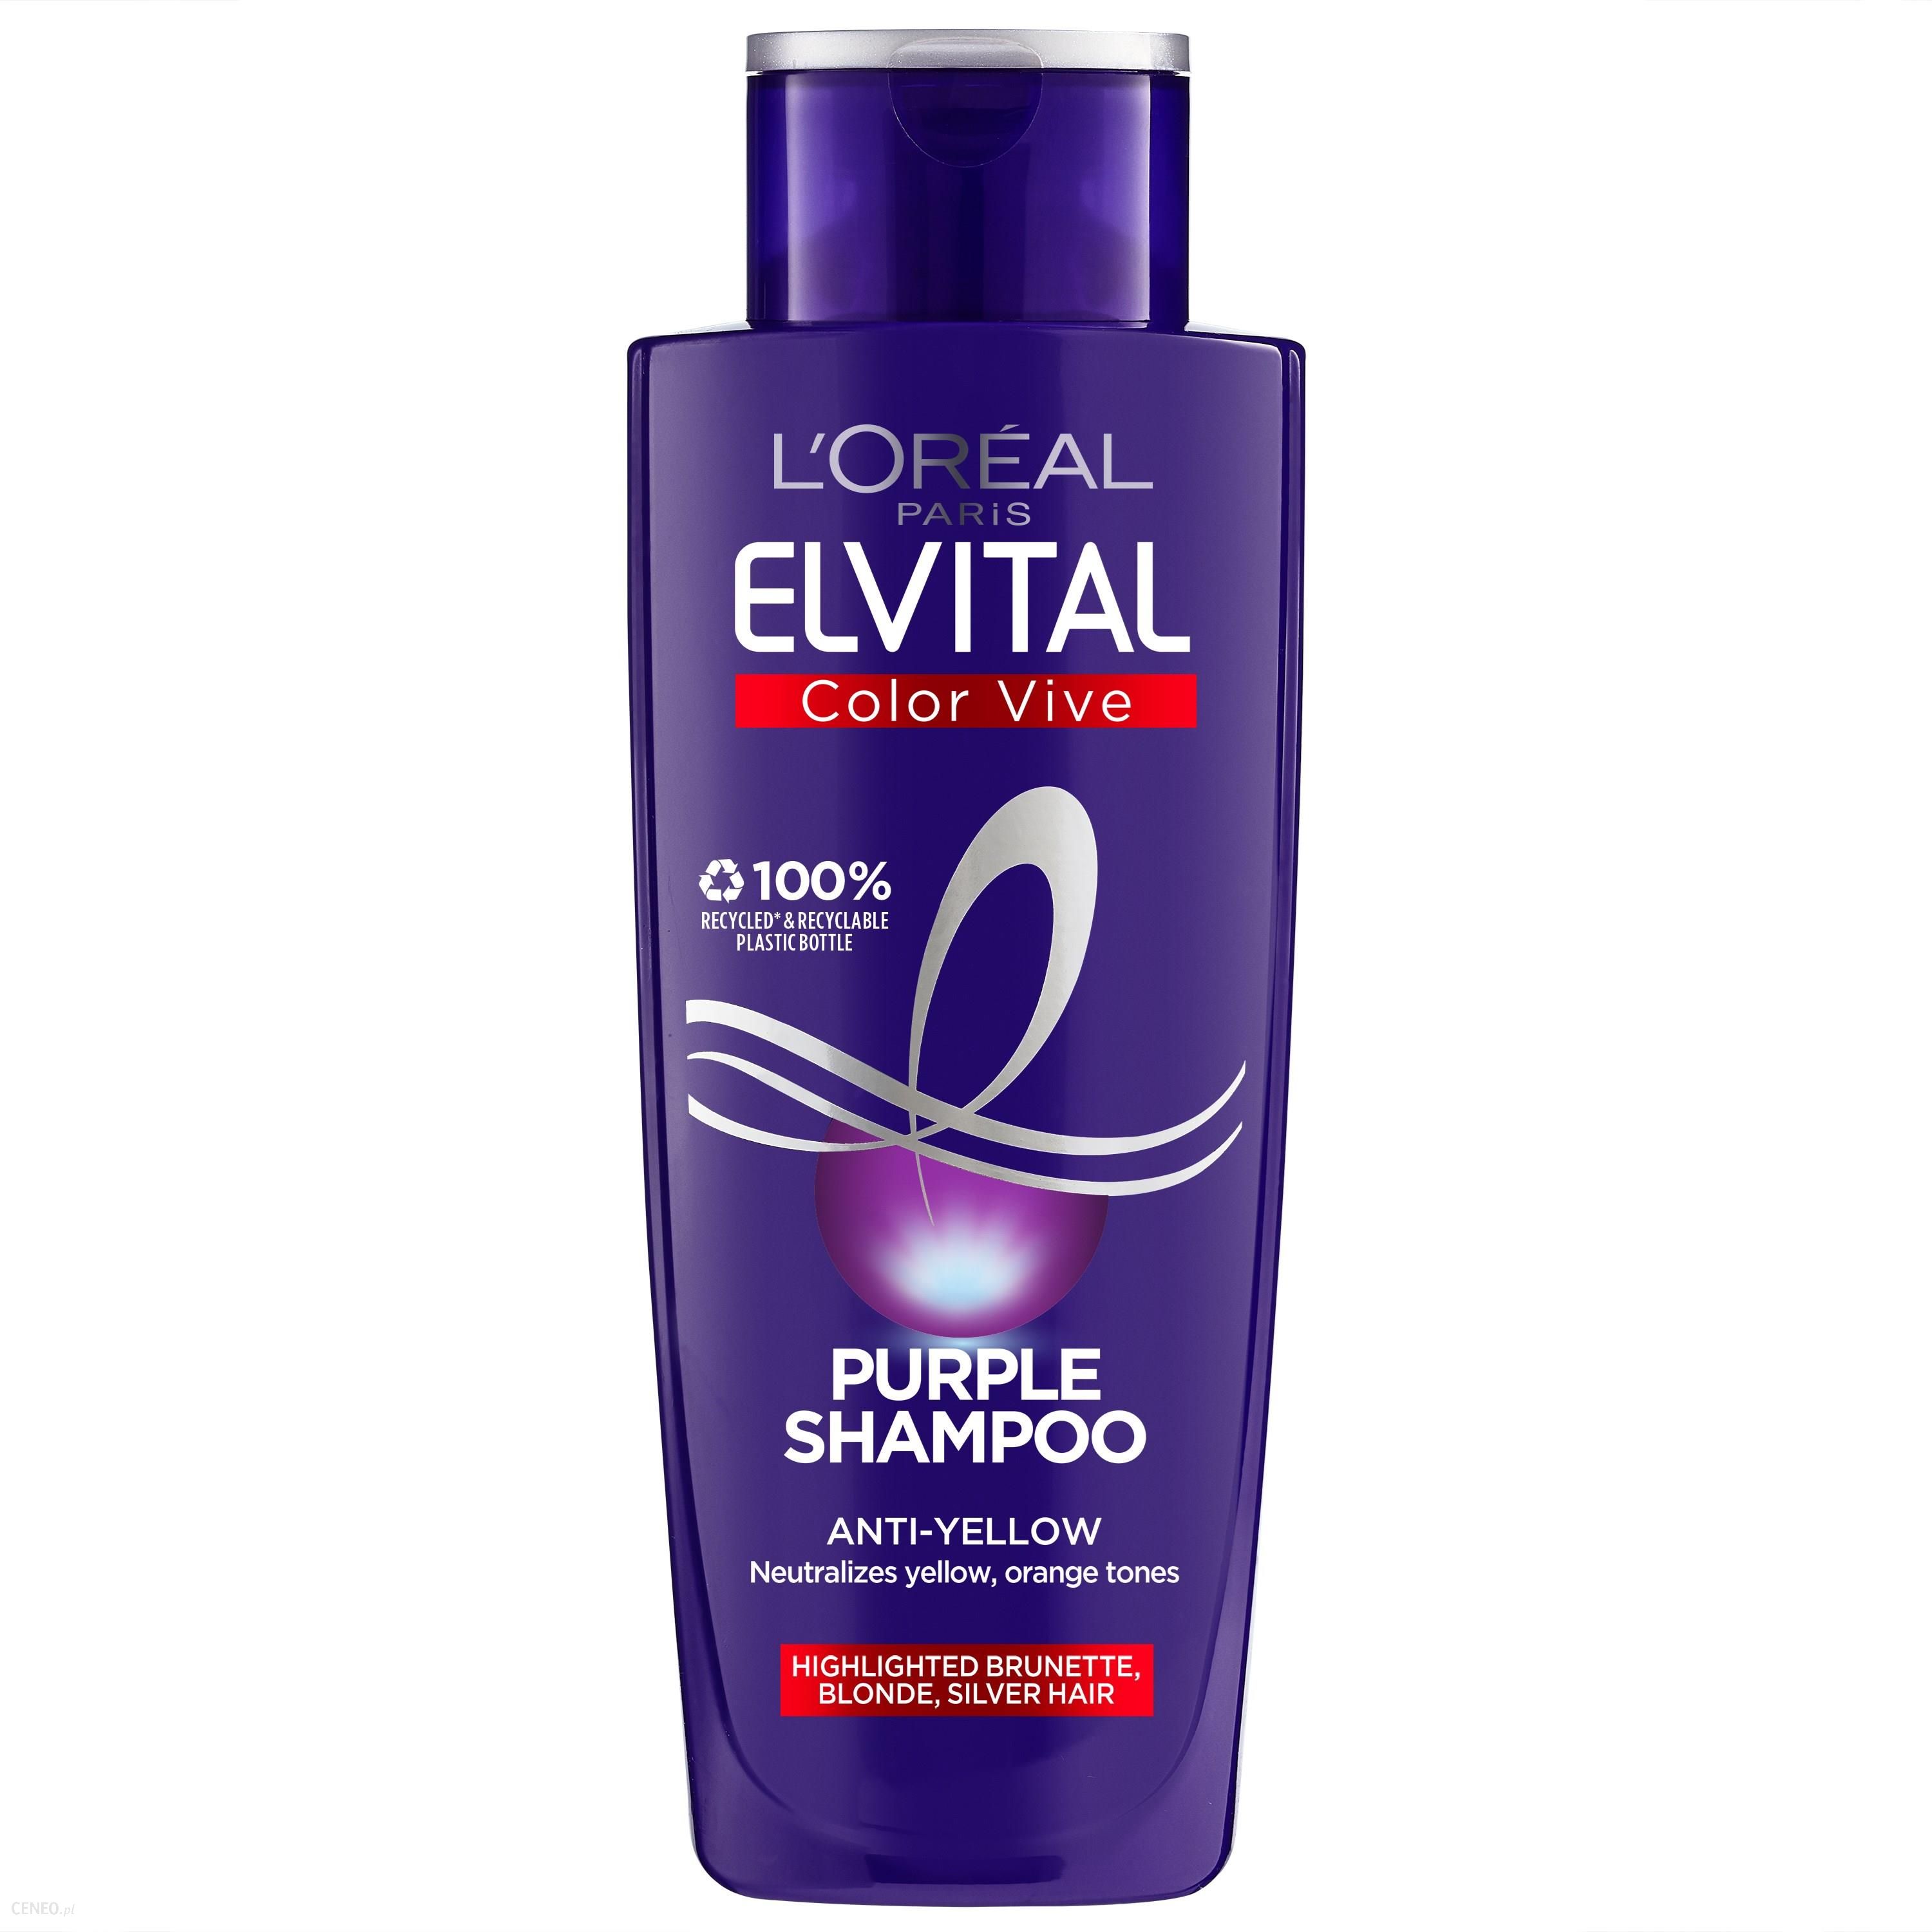 szampon loreal przeciw żółty